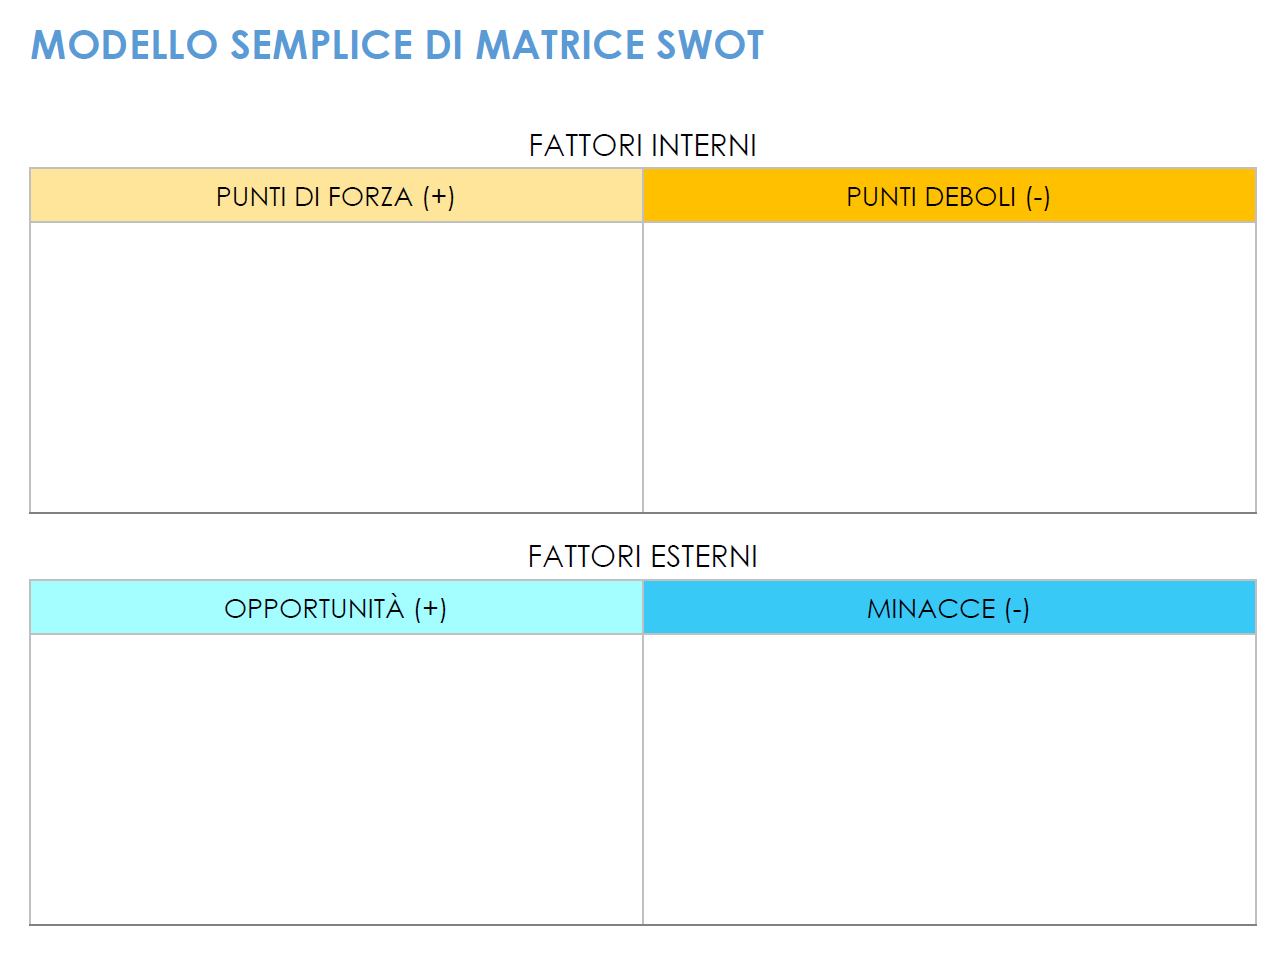  Modello di matrice SWOT semplice